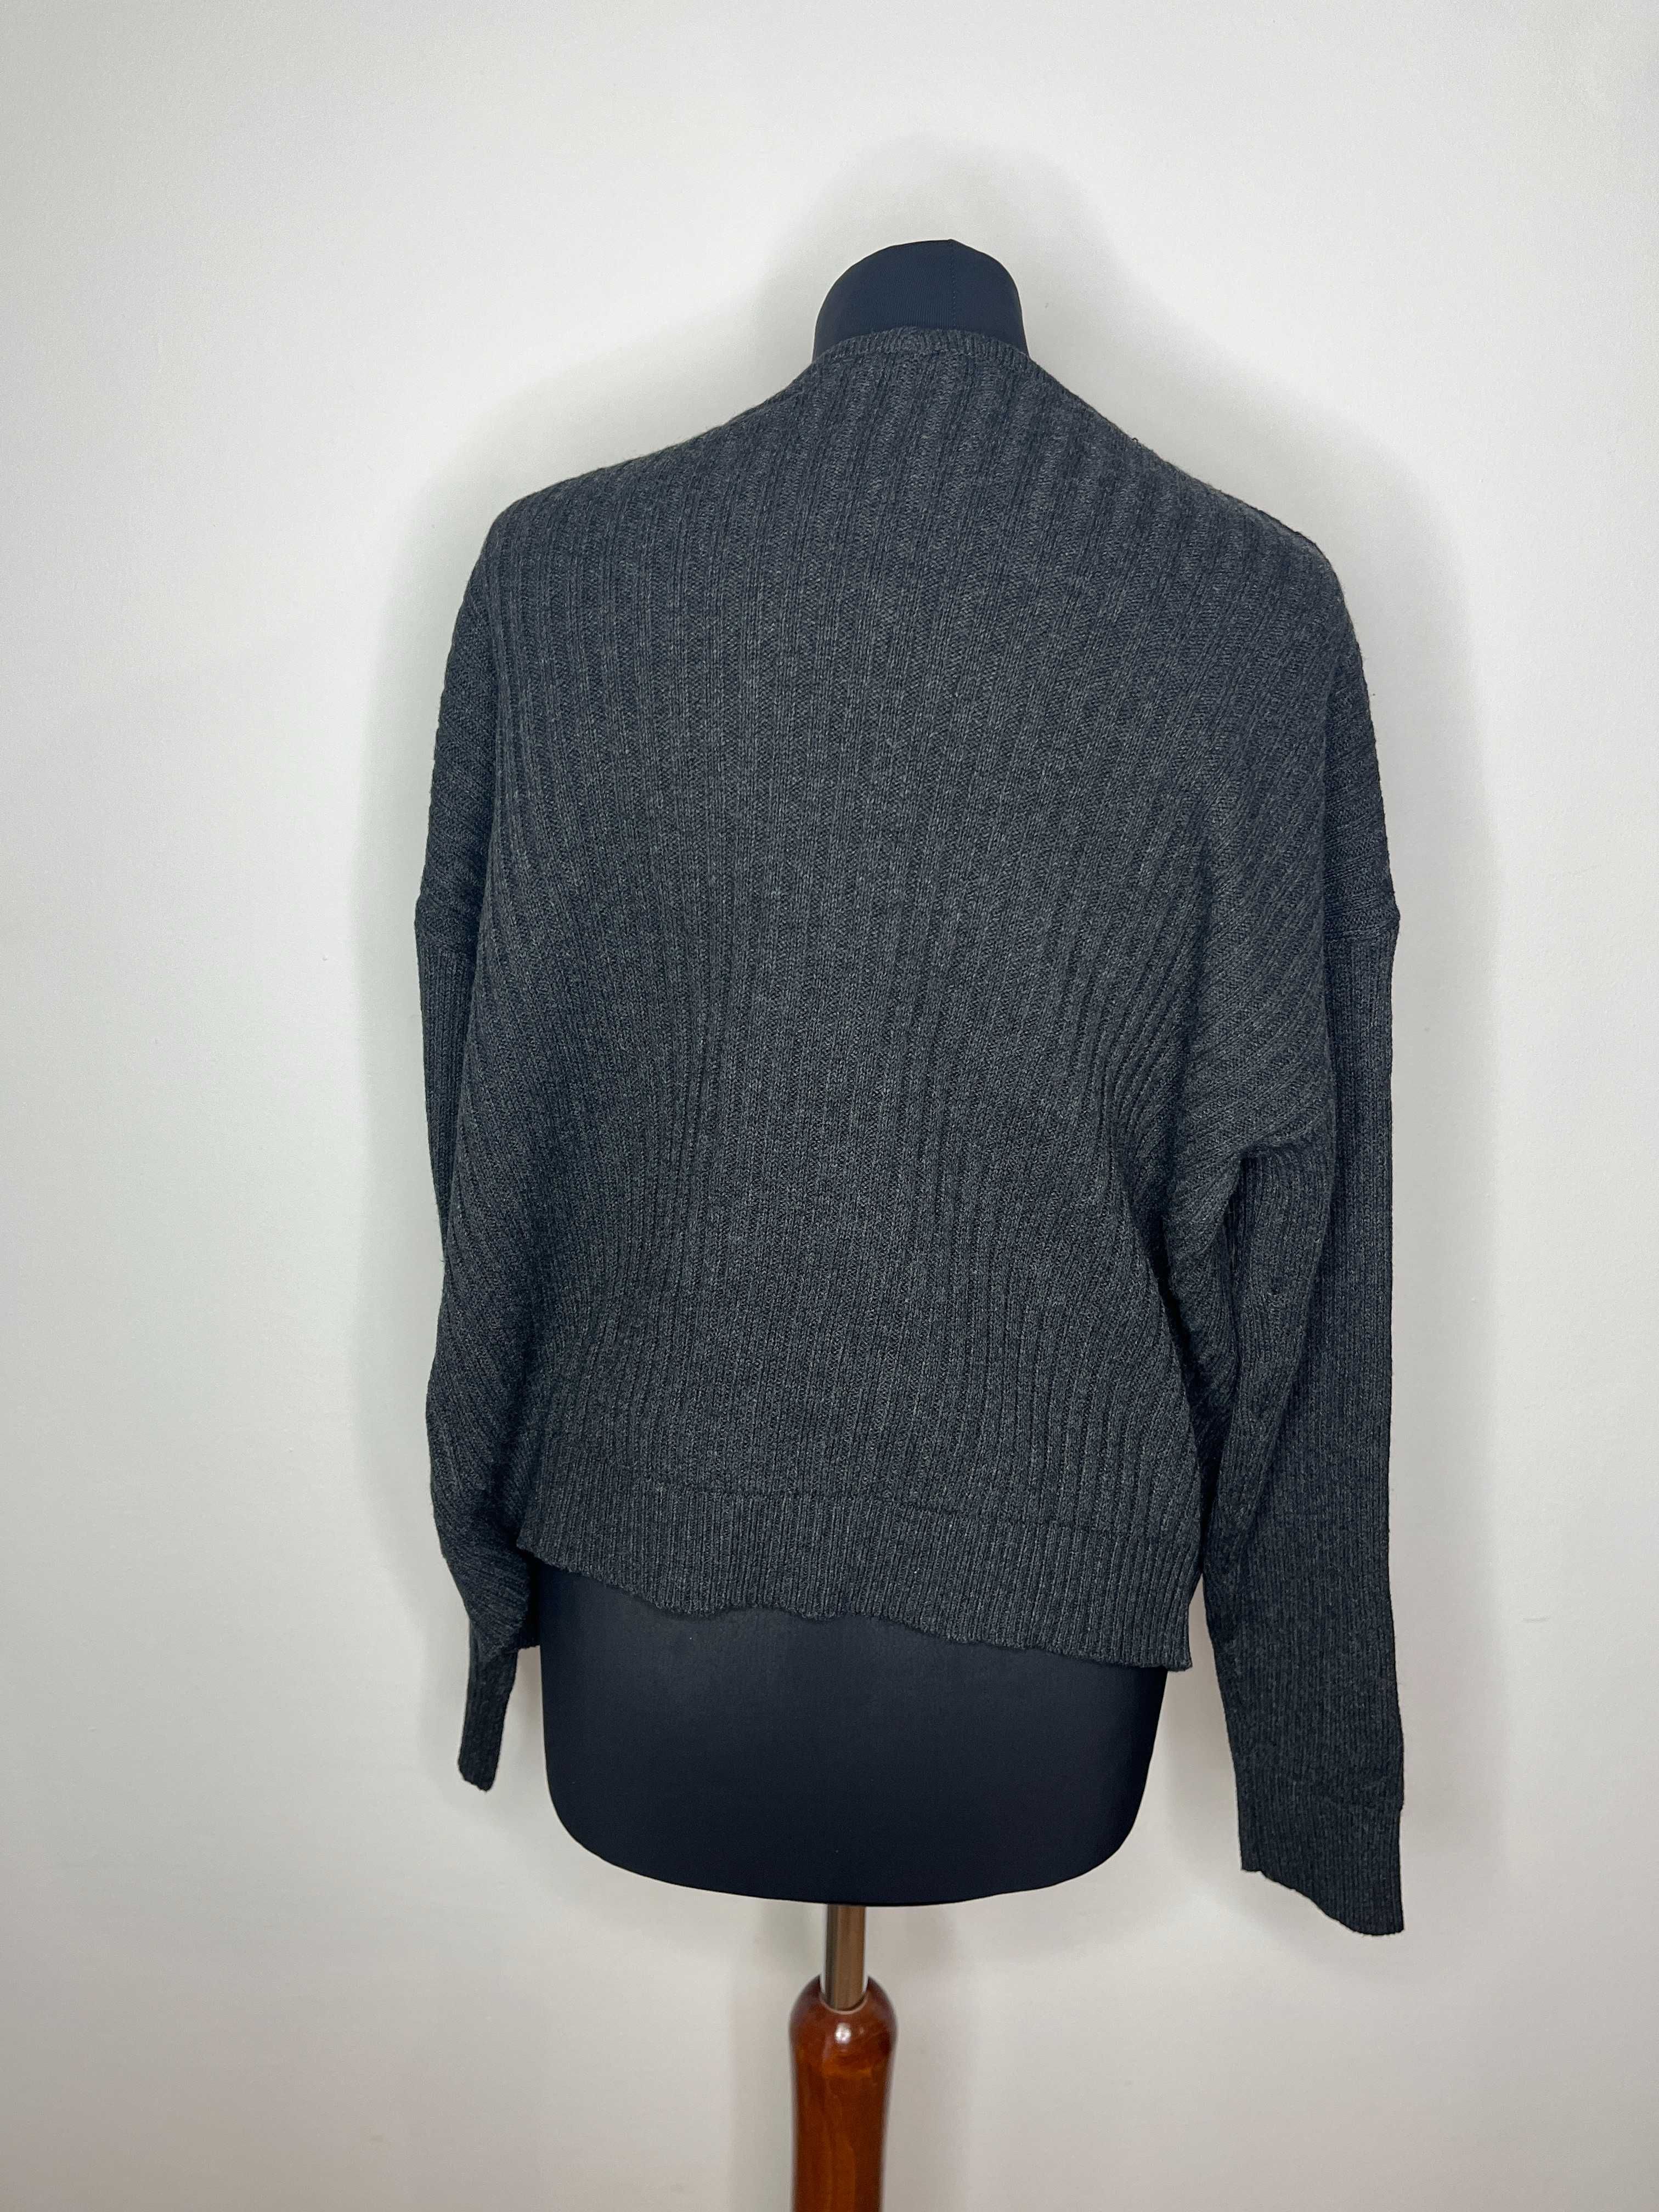 Szary popielaty sweter bawełniany kardigan Bonprix rozmiar S/M 36/38